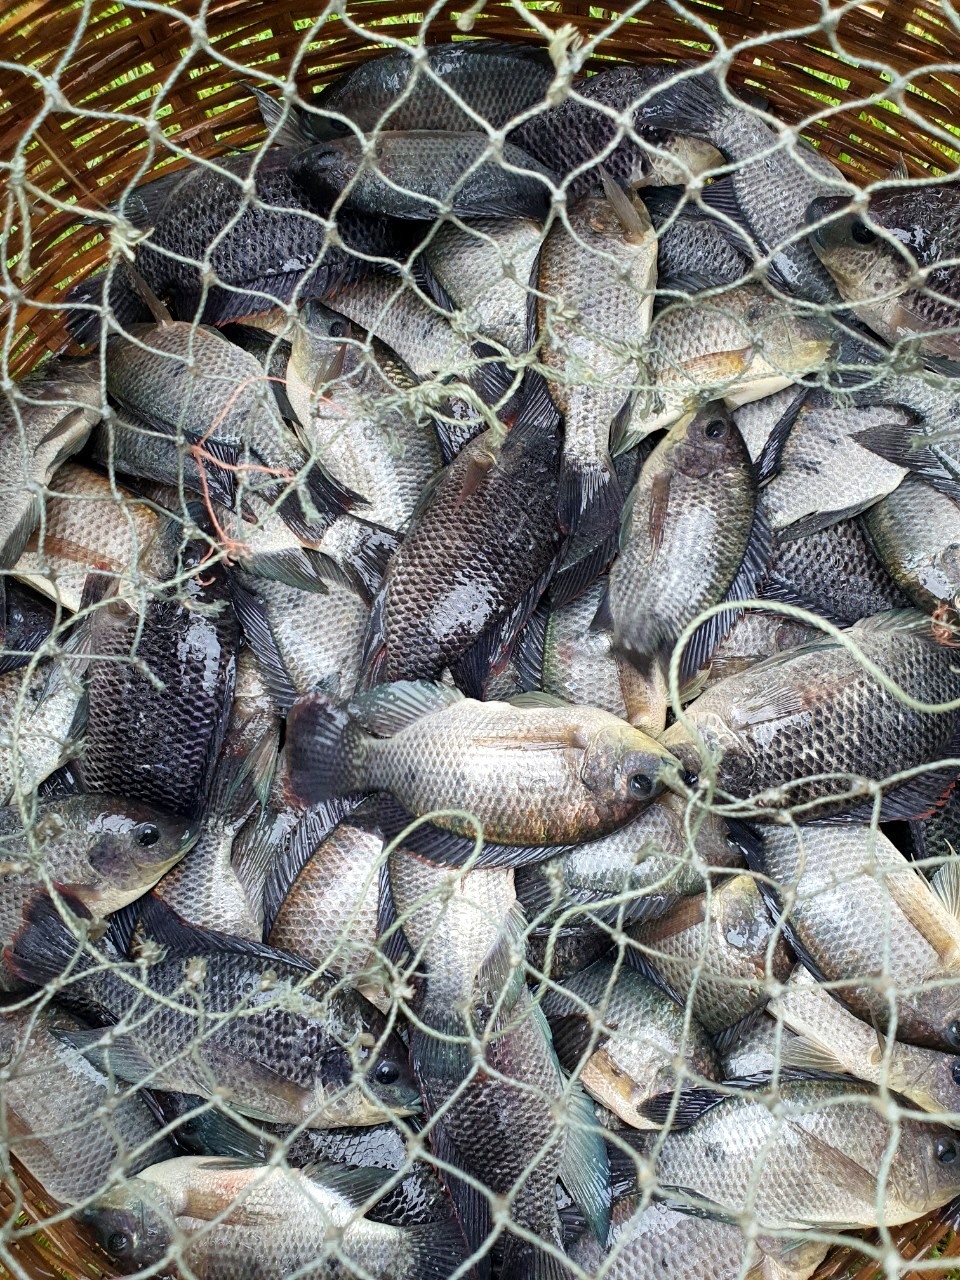 Con cá của người dân huyện Đông Hải có thể chở đi tiêu thụ tại các chợ huyện Đông Hải, Bạc Liêu góp phần không làm khan hiếm hàng hóa tại các đô thị.